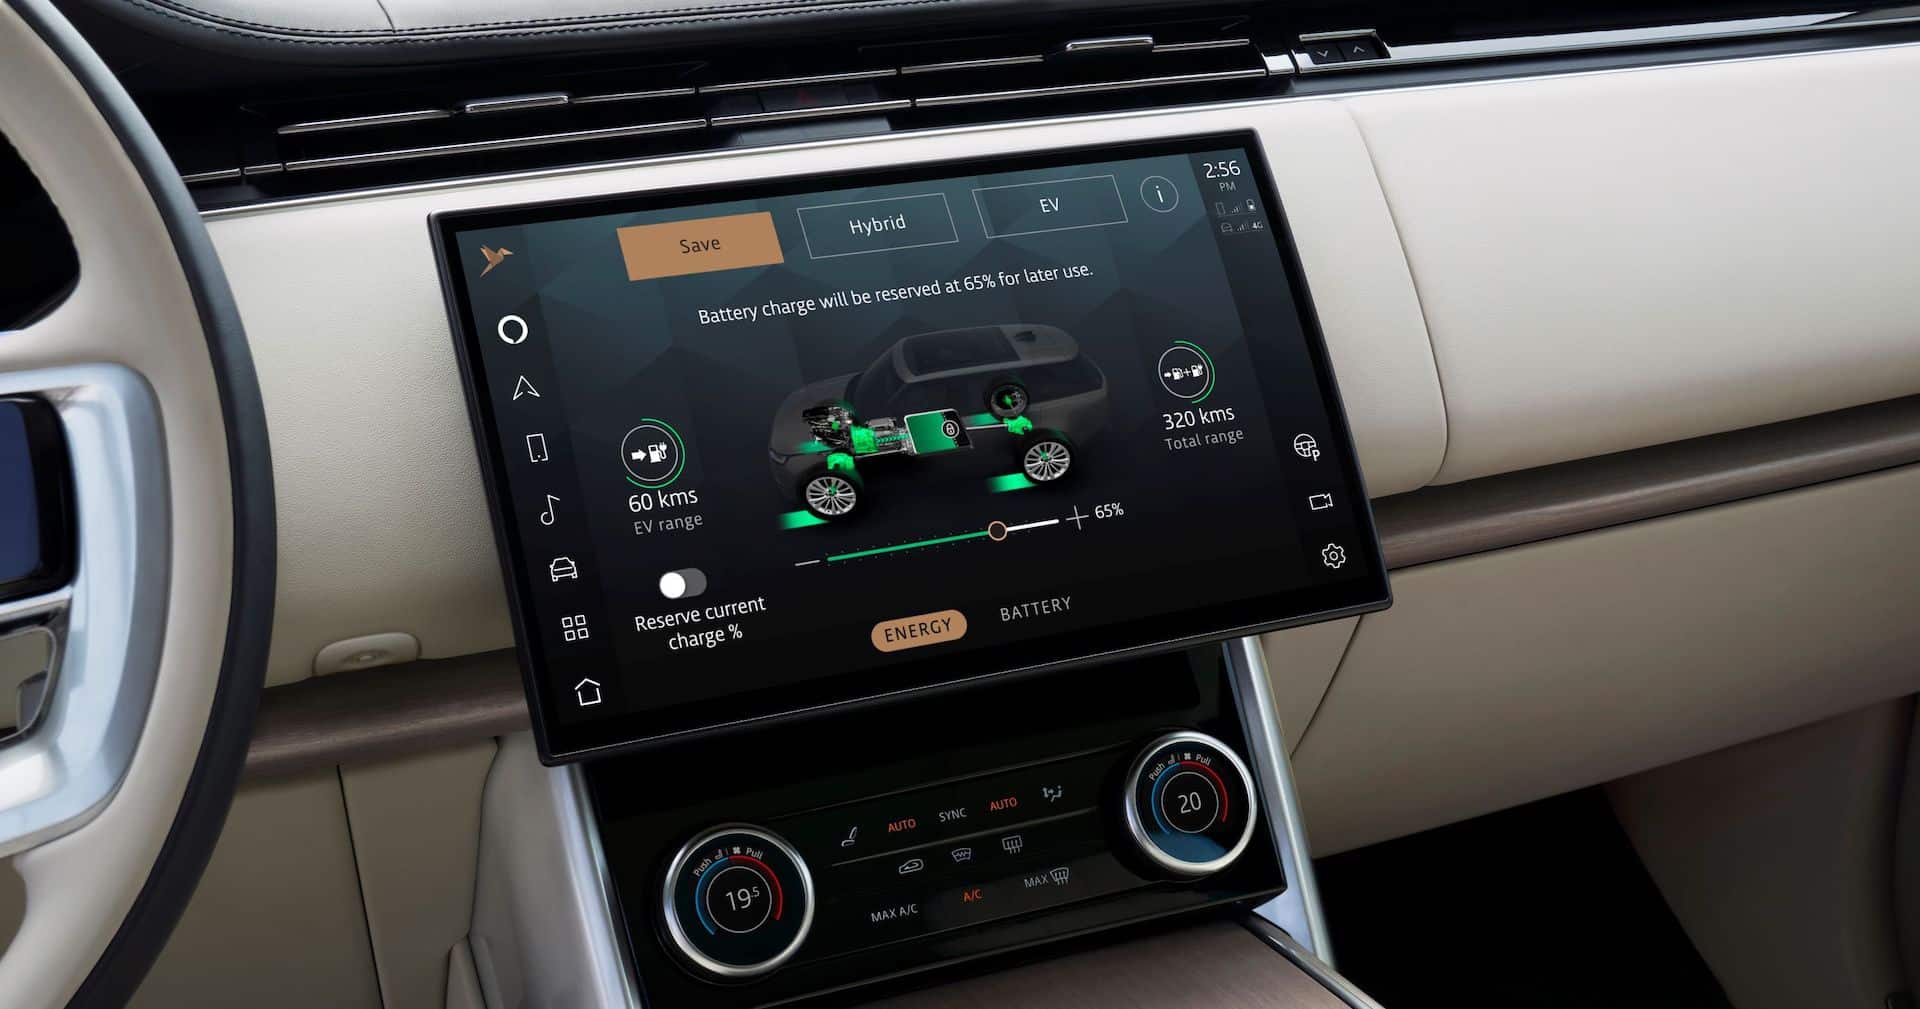 Jaguar Land Rover opens new tech hubs to develop autonomous driving systems